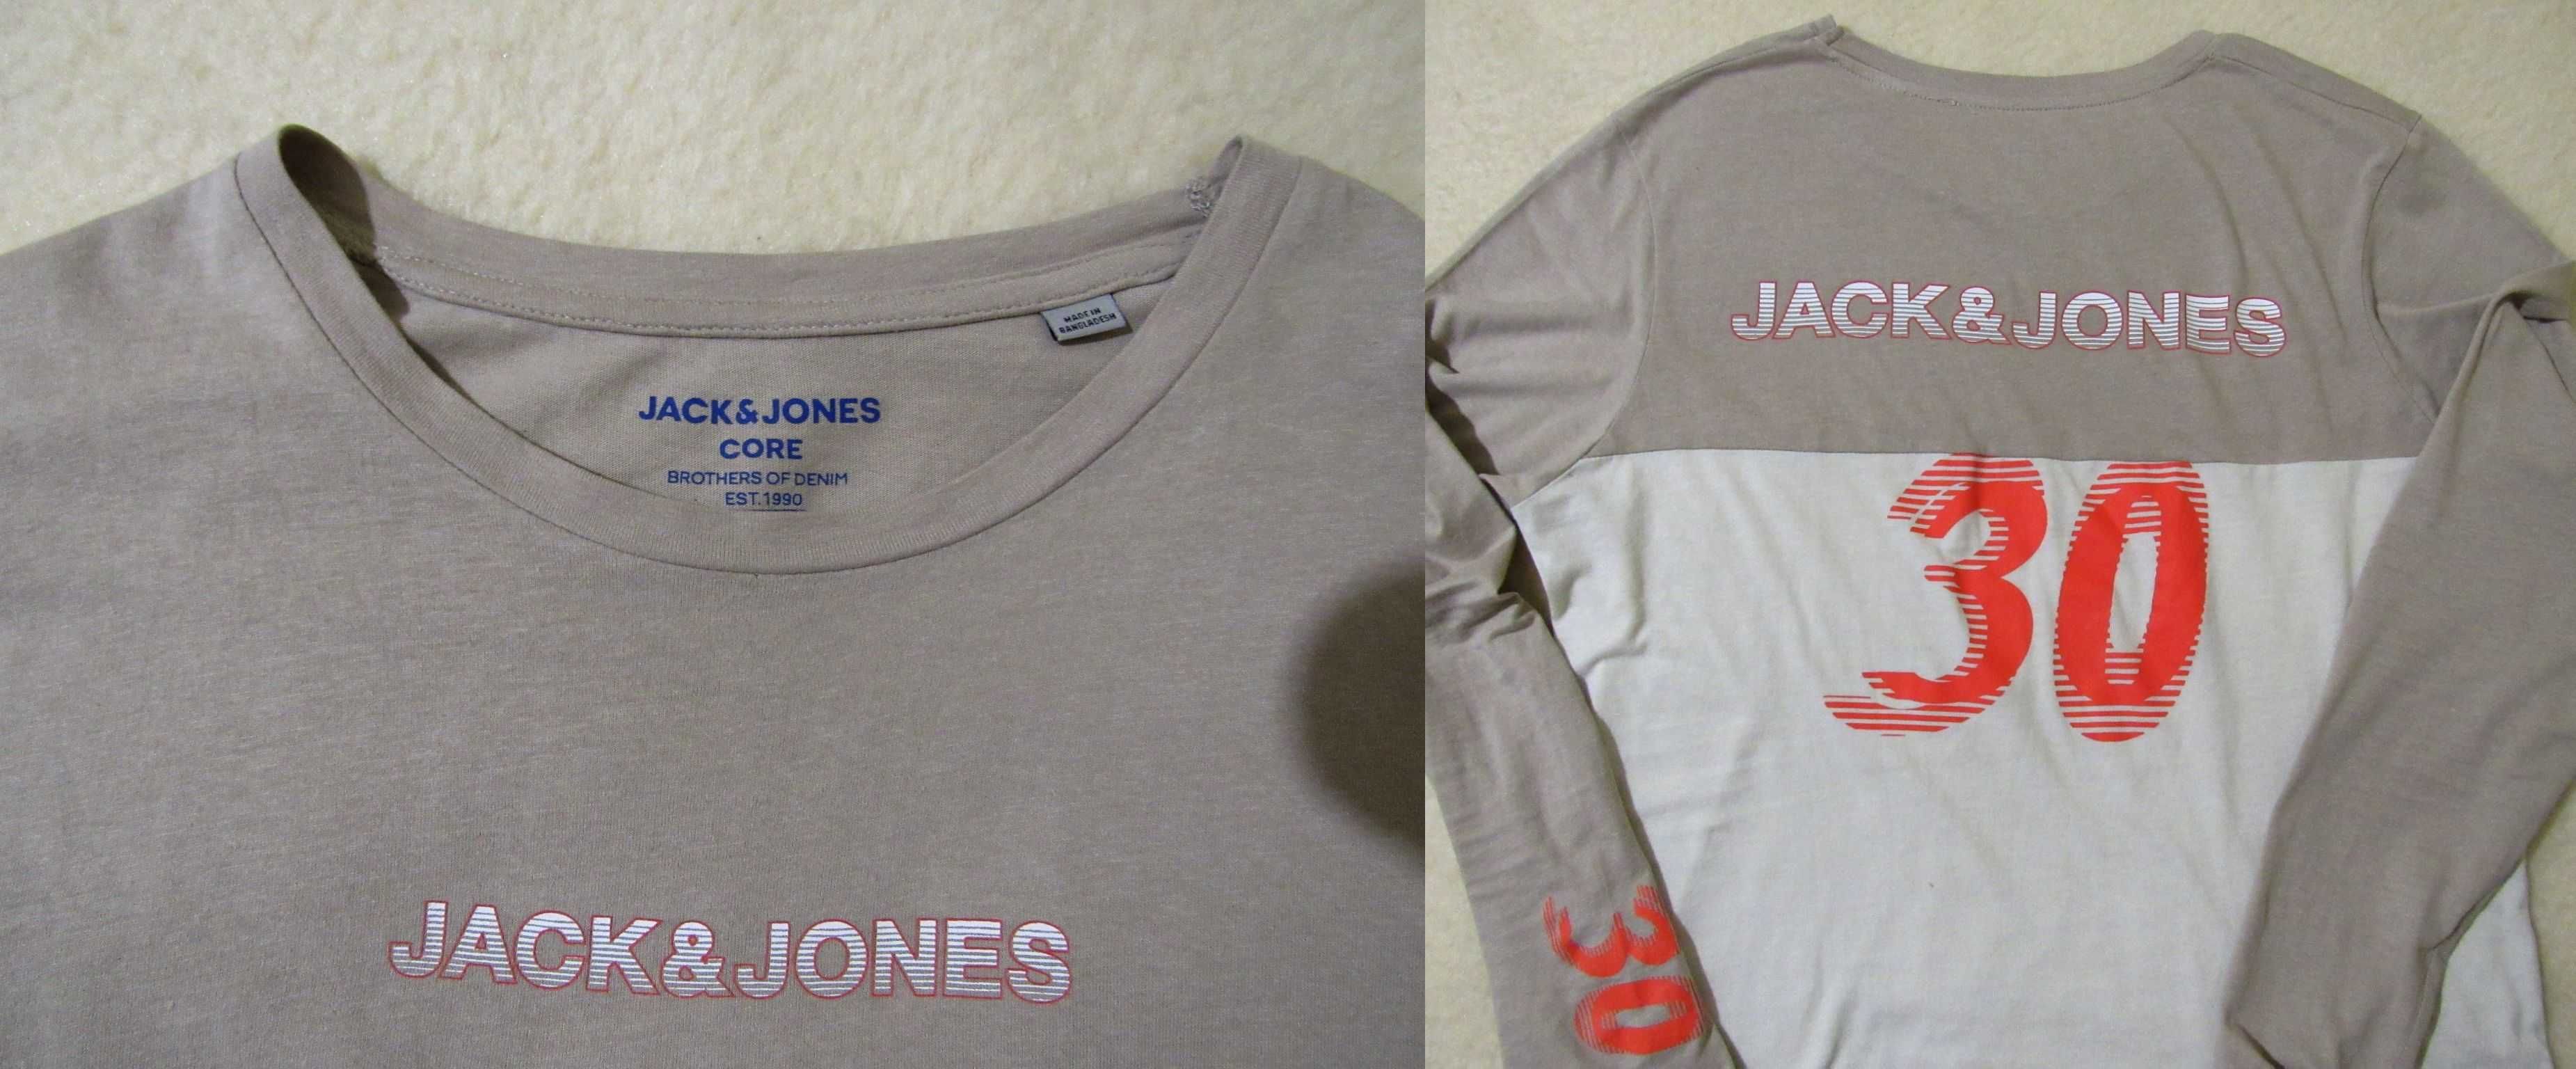 Джинсы Jack Jones + футболка